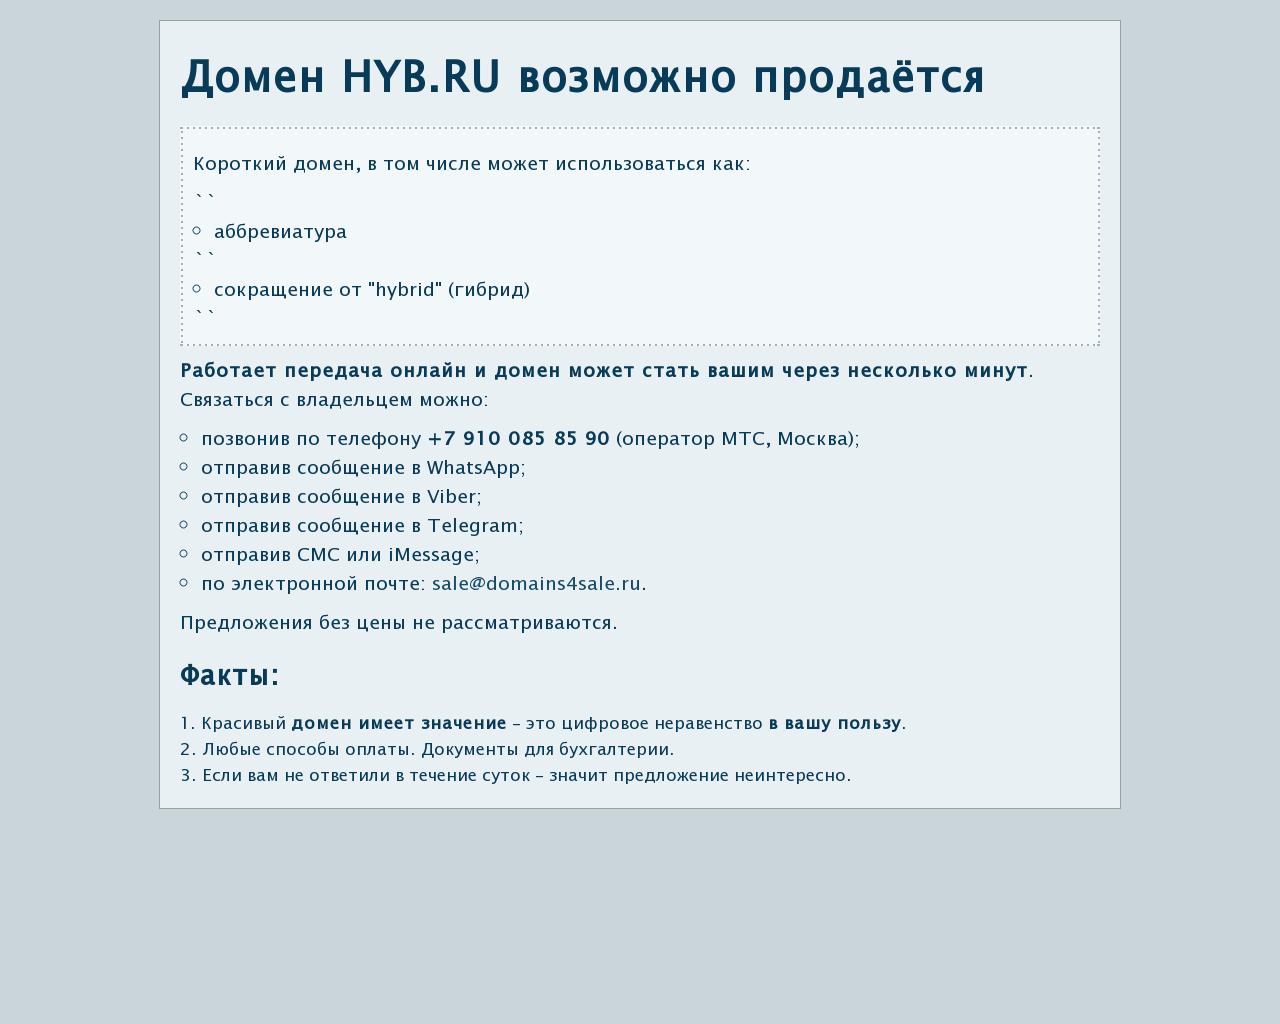 Изображение сайта hyb.ru в разрешении 1280x1024